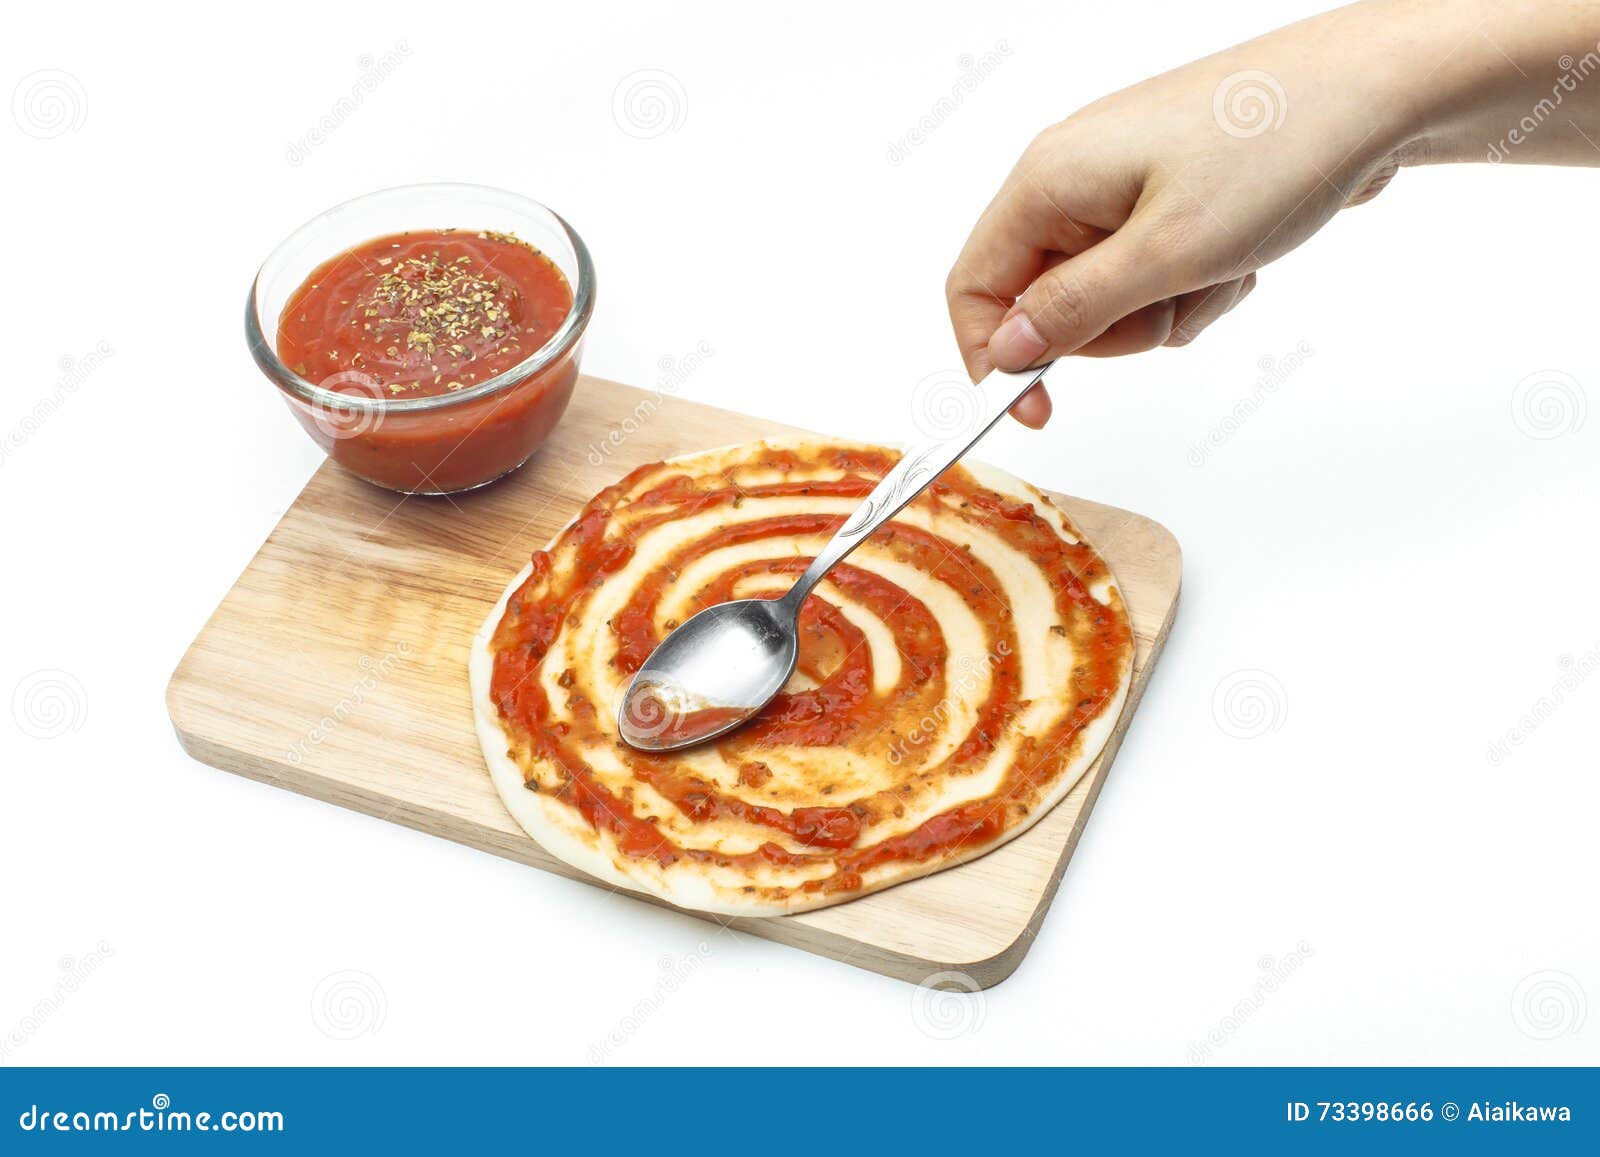 что такое белый соус к пицце фото 117